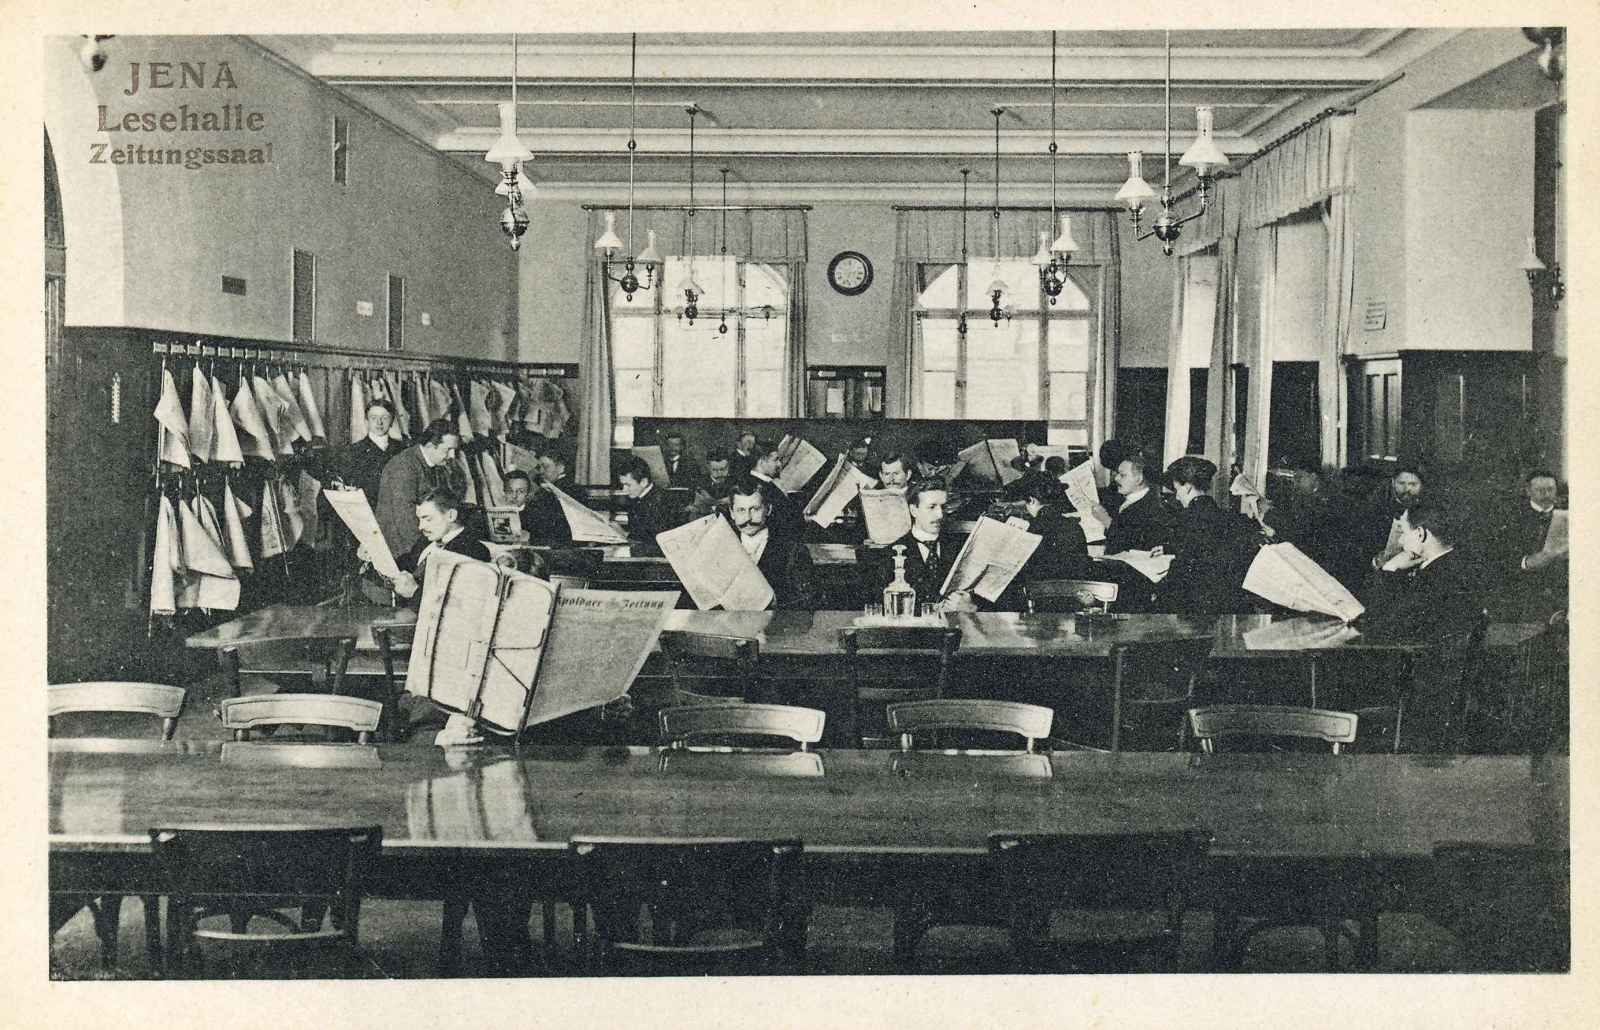 Blick in den Zeitungssaal der Lesehalle. An hintereinander aufgereihten Tischen sitzen mehrere Personen mit Zeitungen in der Hand.